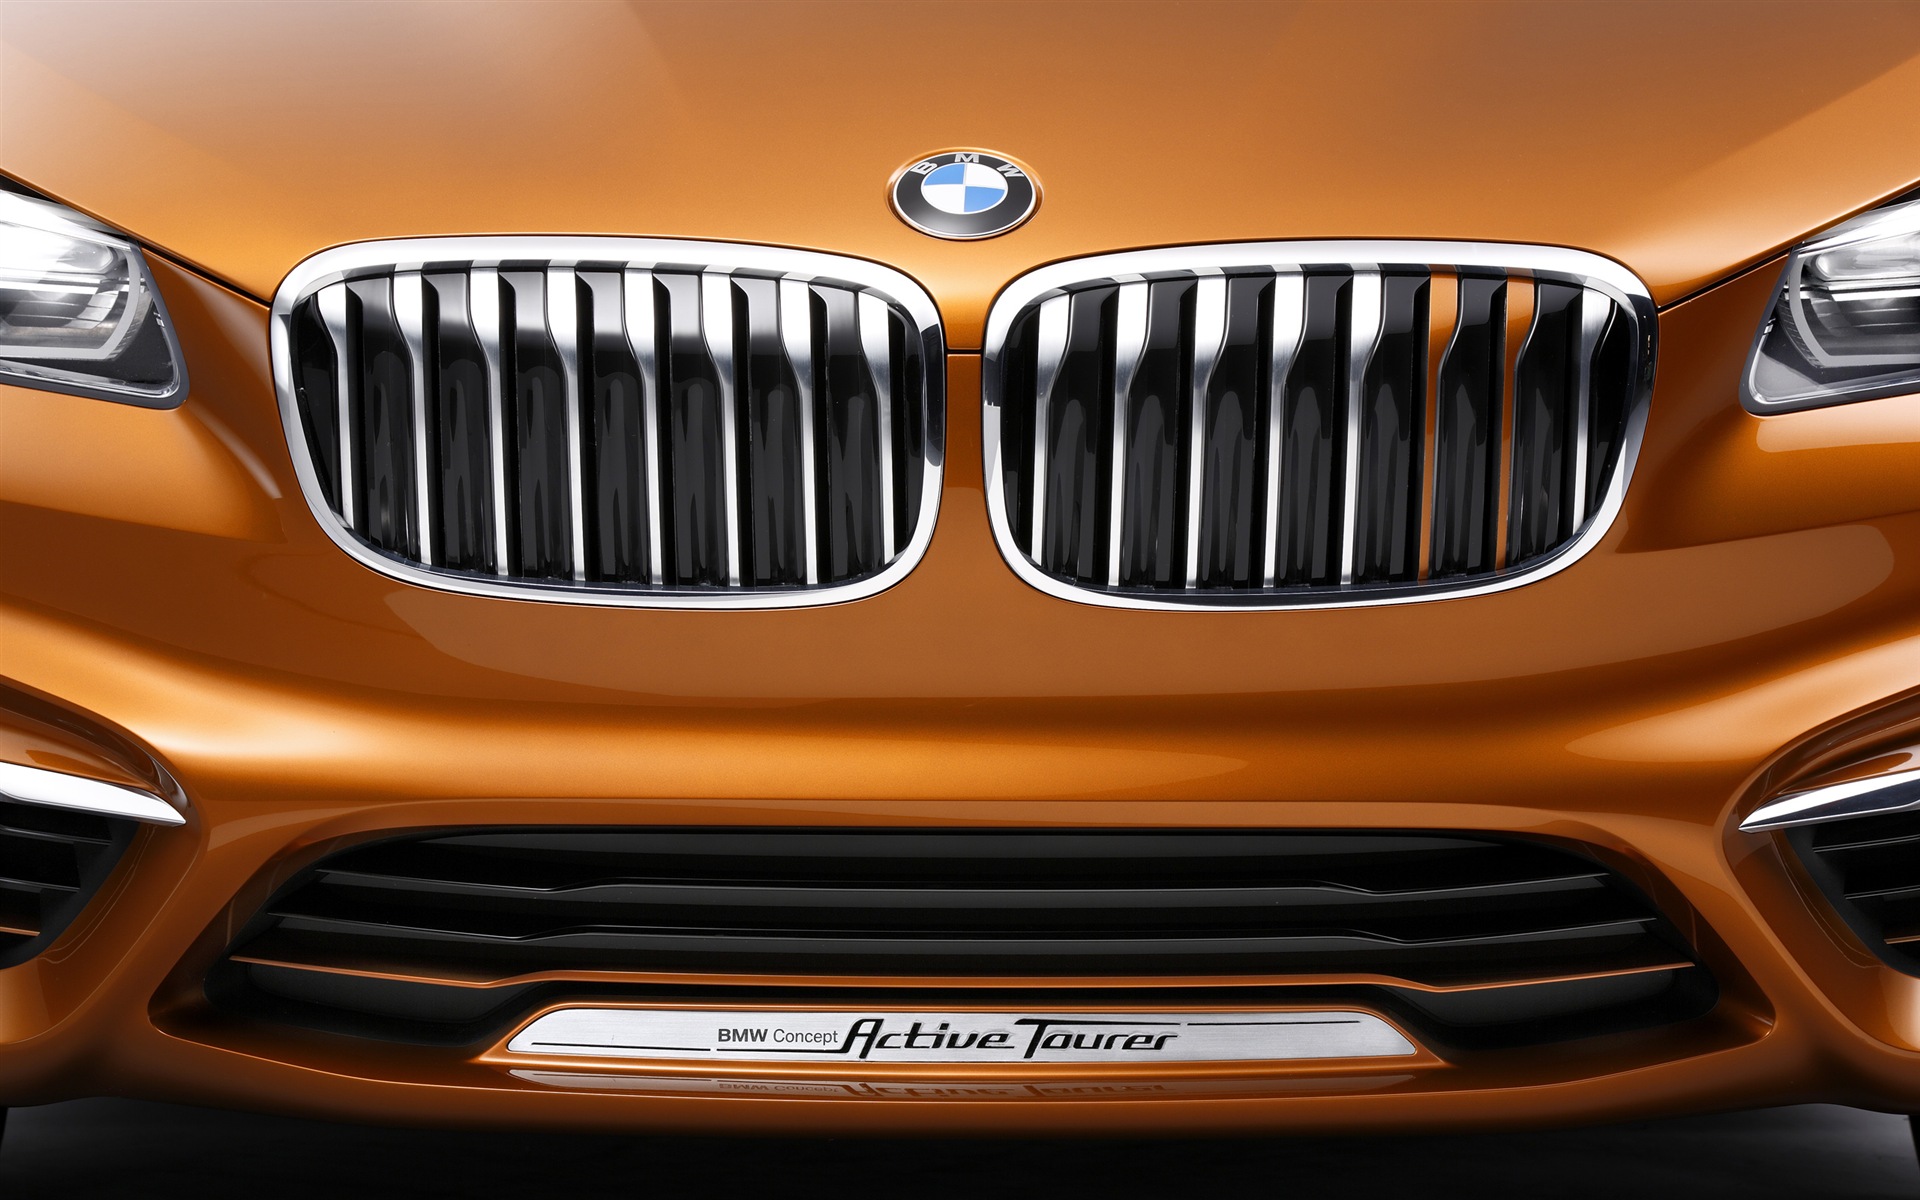 2013 BMWコンセプトアクティブツアラーのHDの壁紙 #15 - 1920x1200